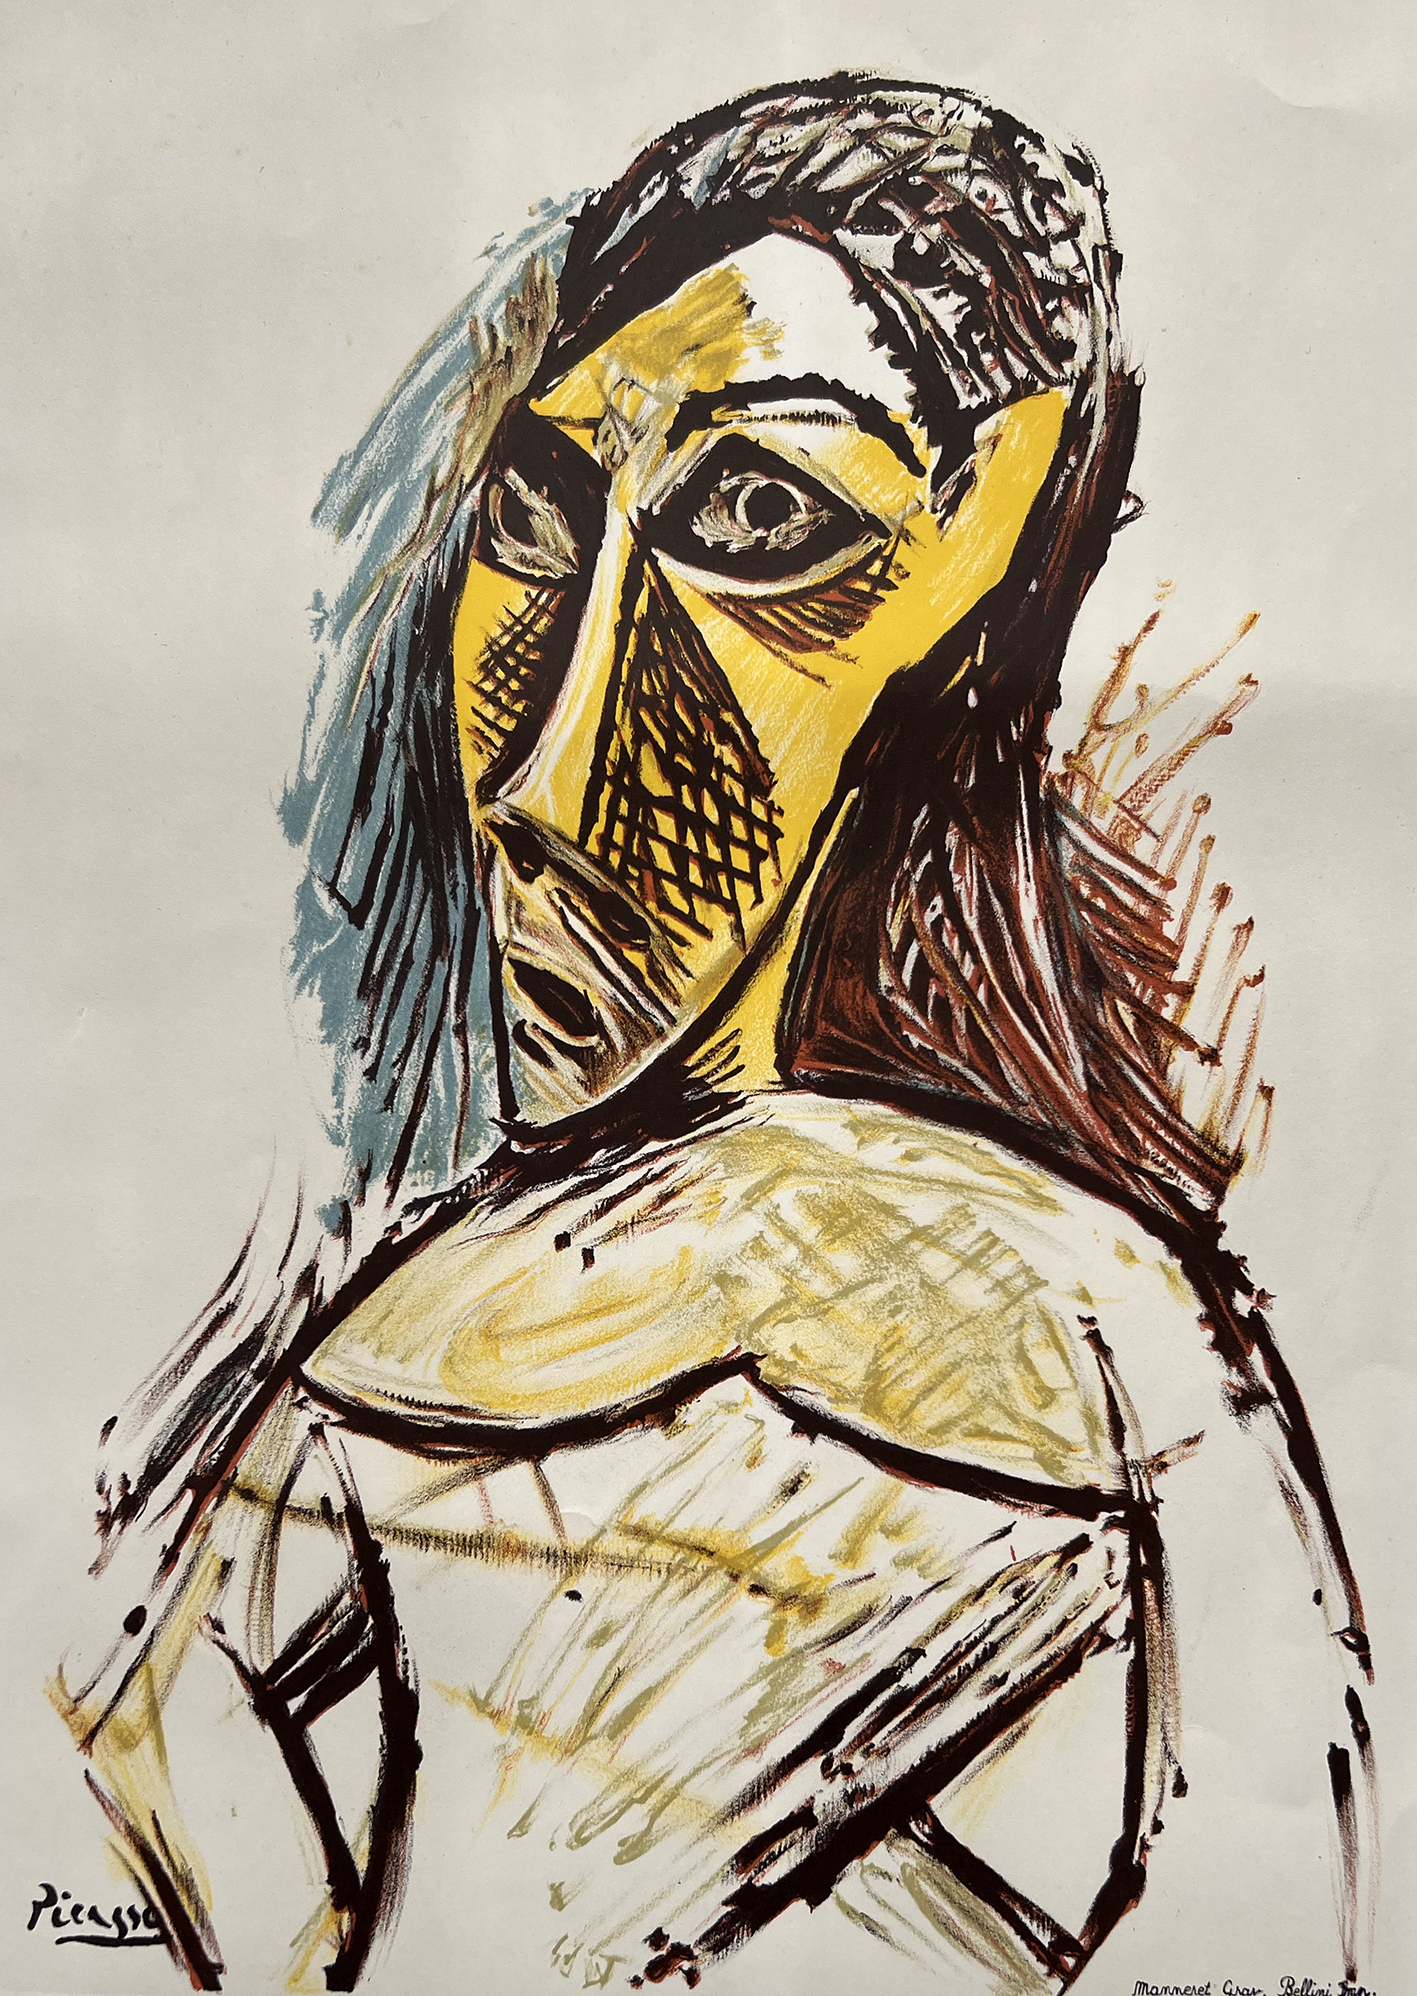 Al momento stai visualizzando “Il Mito dell’Arte Africana nel ‘900. Da Picasso a Man Ray, da Calder a Basquiat e Matisse” in mostra a Trieste dal 25 marzo al 30 luglio